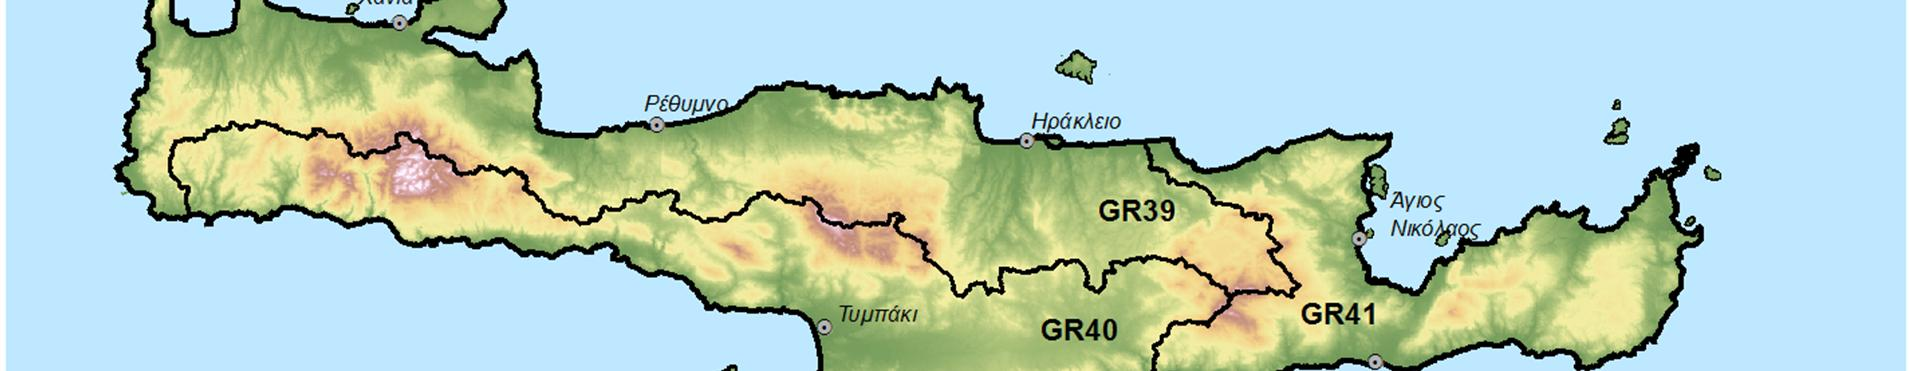 1: Το Υδατικό διαμέρισμα Κρήτης Ως «Λεκάνη Απορροής Ποταμού» ορίζεται η εδαφική έκταση από την οποία αποστραγγίζεται το σύνολο της απορροής (βροχόπτωση ή/και χιονόπτωση) μιας περιοχής, μέσω του